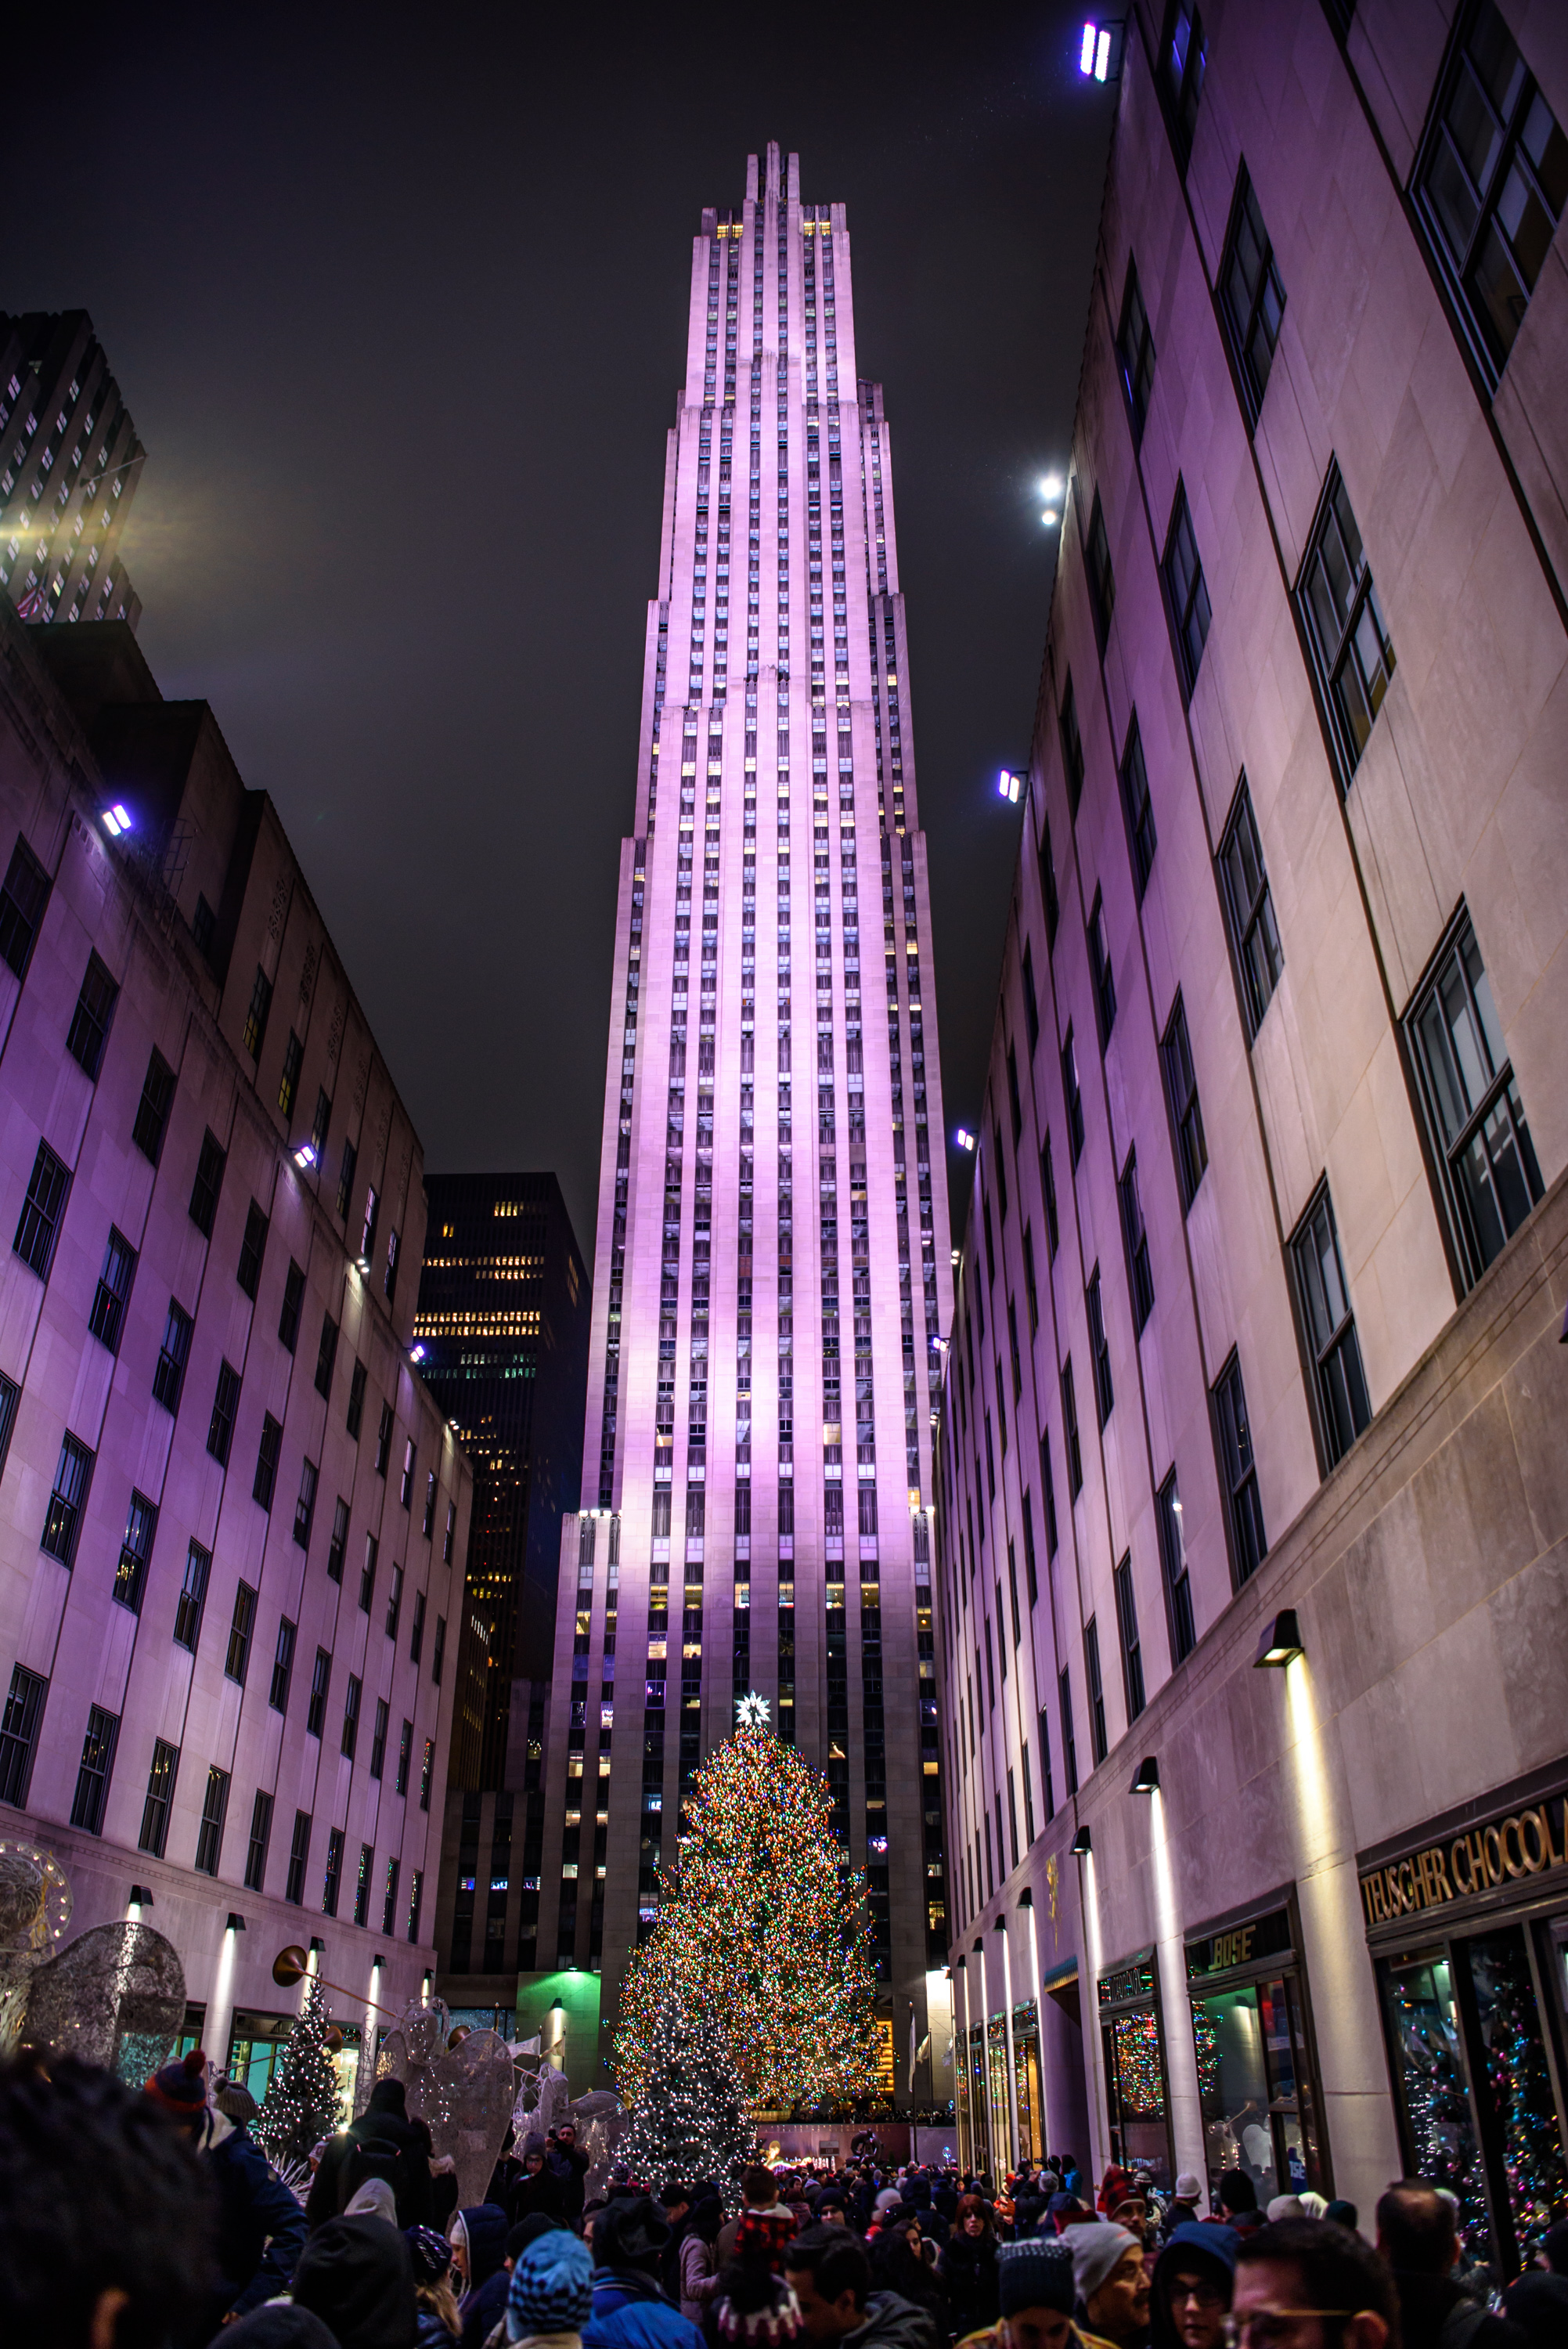 16. Rockefeller Center